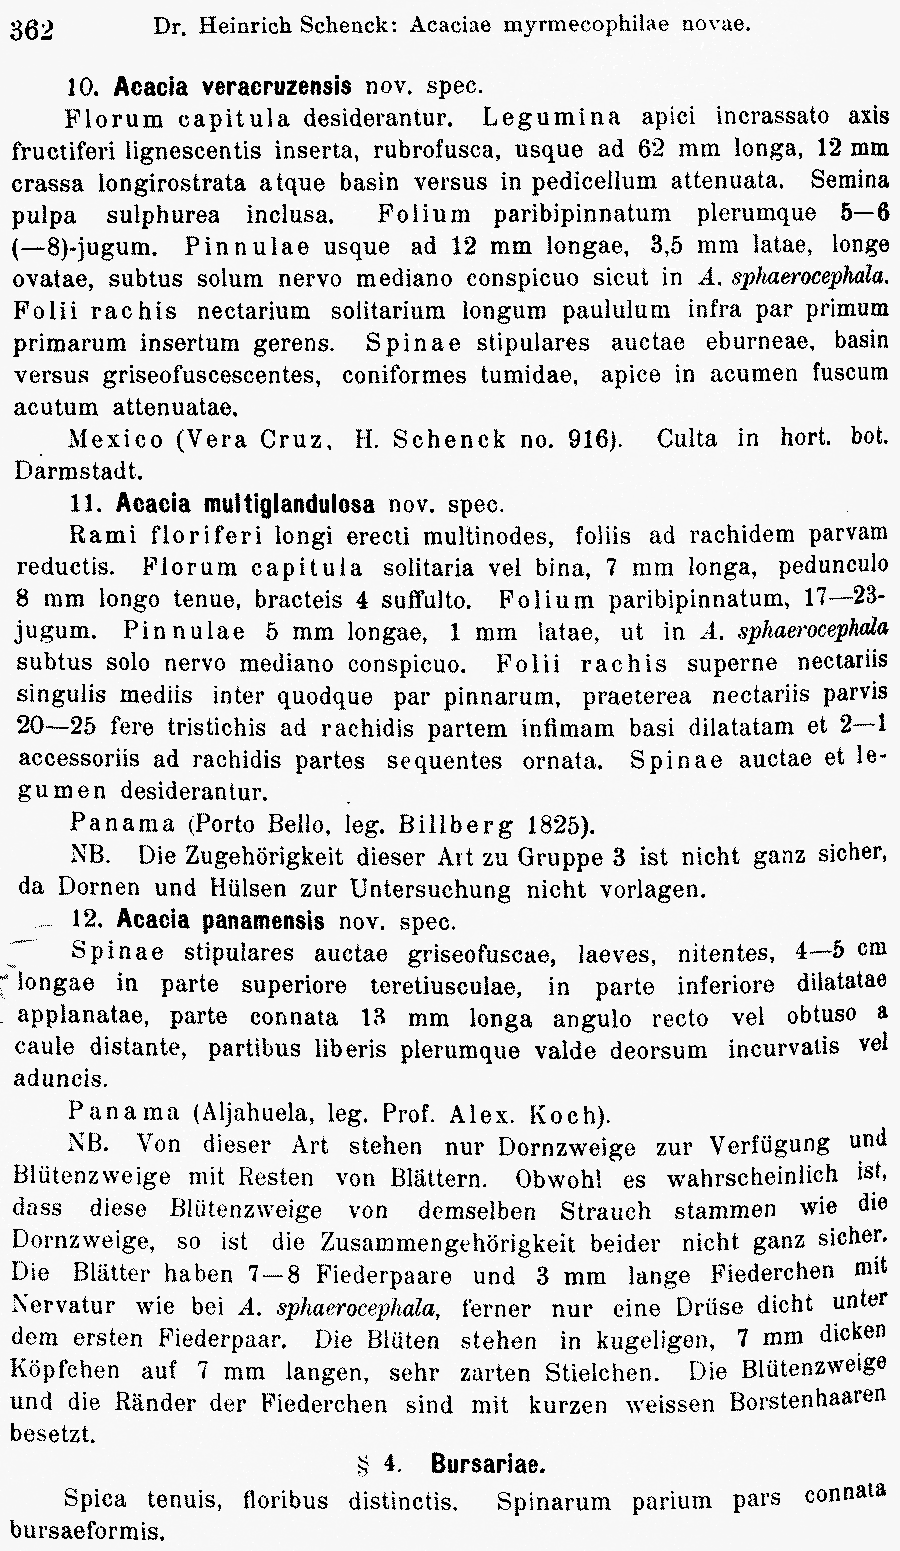 https://forum.plantarium.ru/misc.php?action=pun_attachment&amp;item=28181